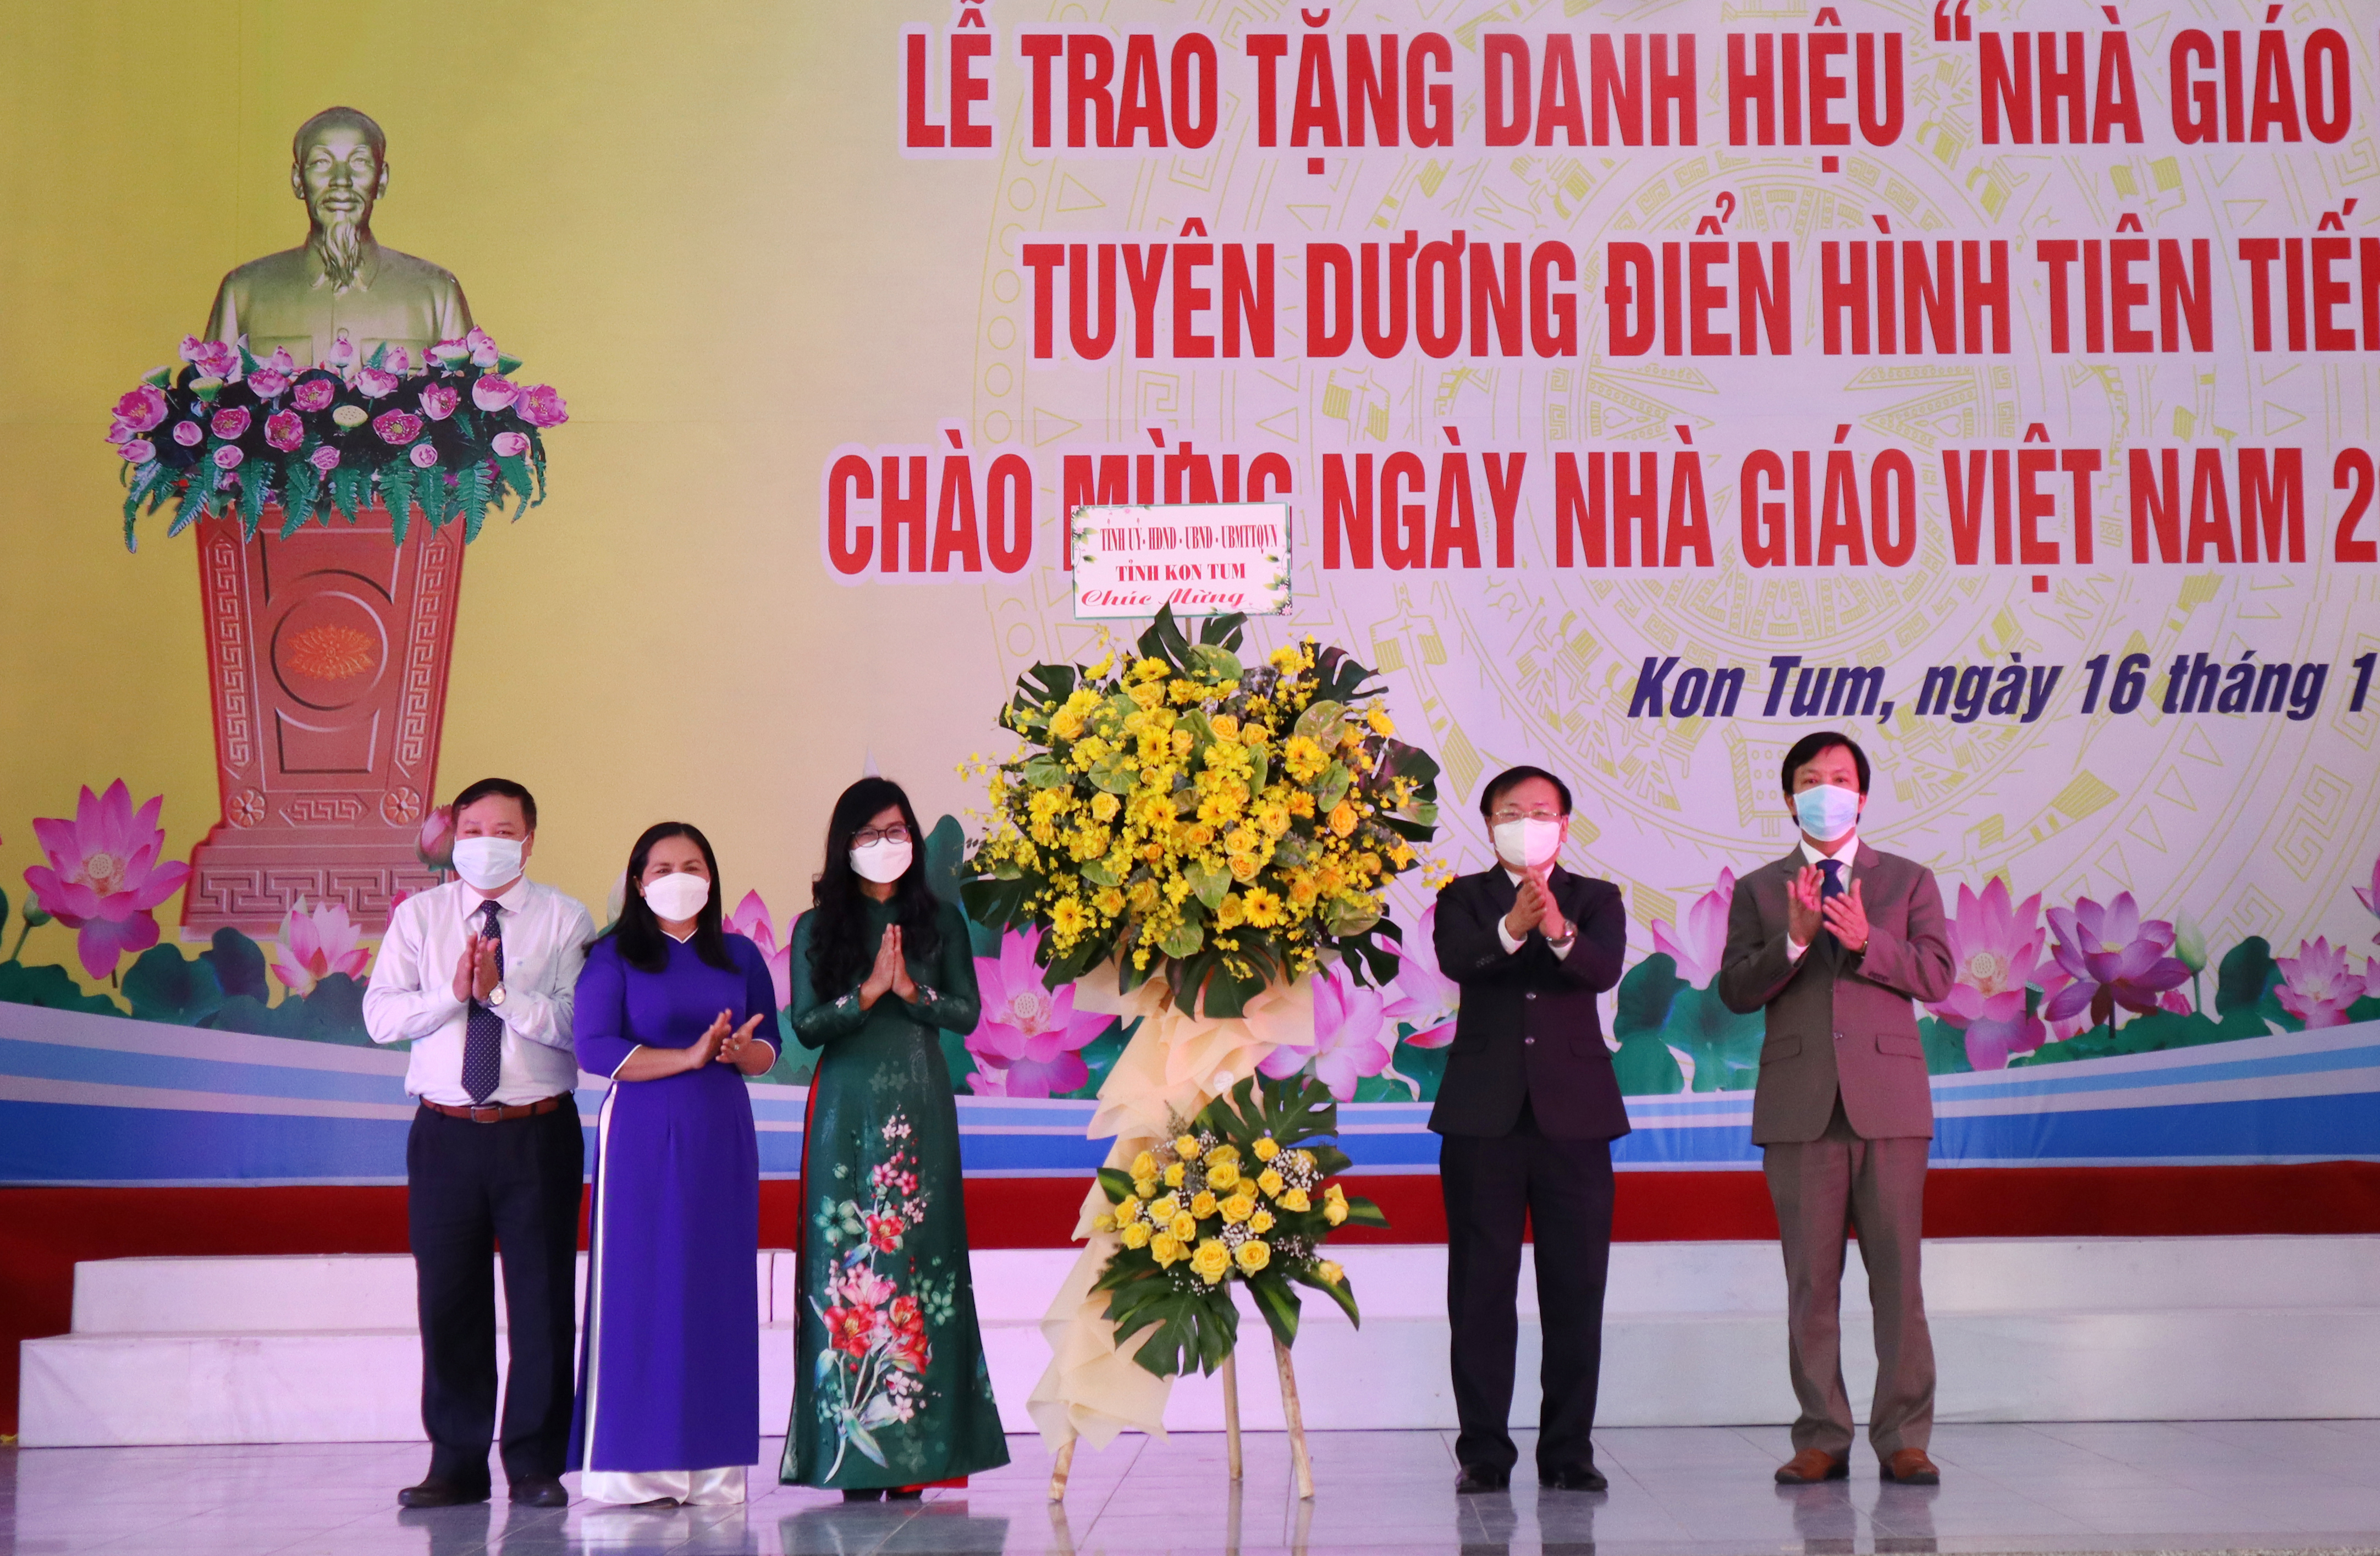 Chúc mừng ngày nhà giáo Việt Nam! Hãy cùng xem hình ảnh về những người thầy, người truyền đạt kiến thức và cách sống đúng đắn cho các thế hệ trẻ. Những hình ảnh này sẽ là nguồn động lực và truyền cảm hứng tuyệt vời cho bạn.